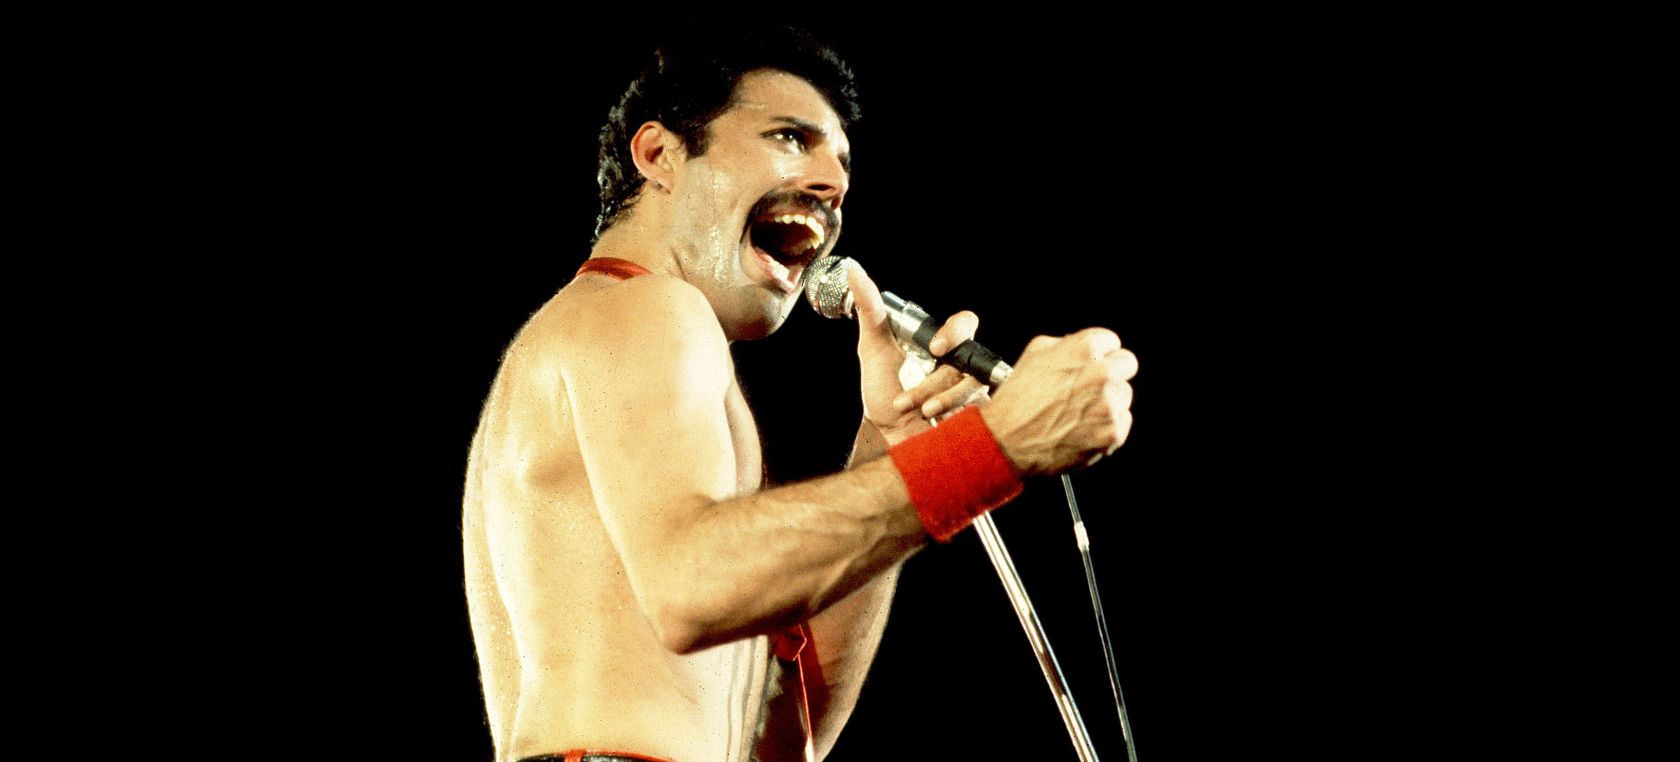 'Innuendo', 31 años del canto del cisne de Freddie Mercury con Queen